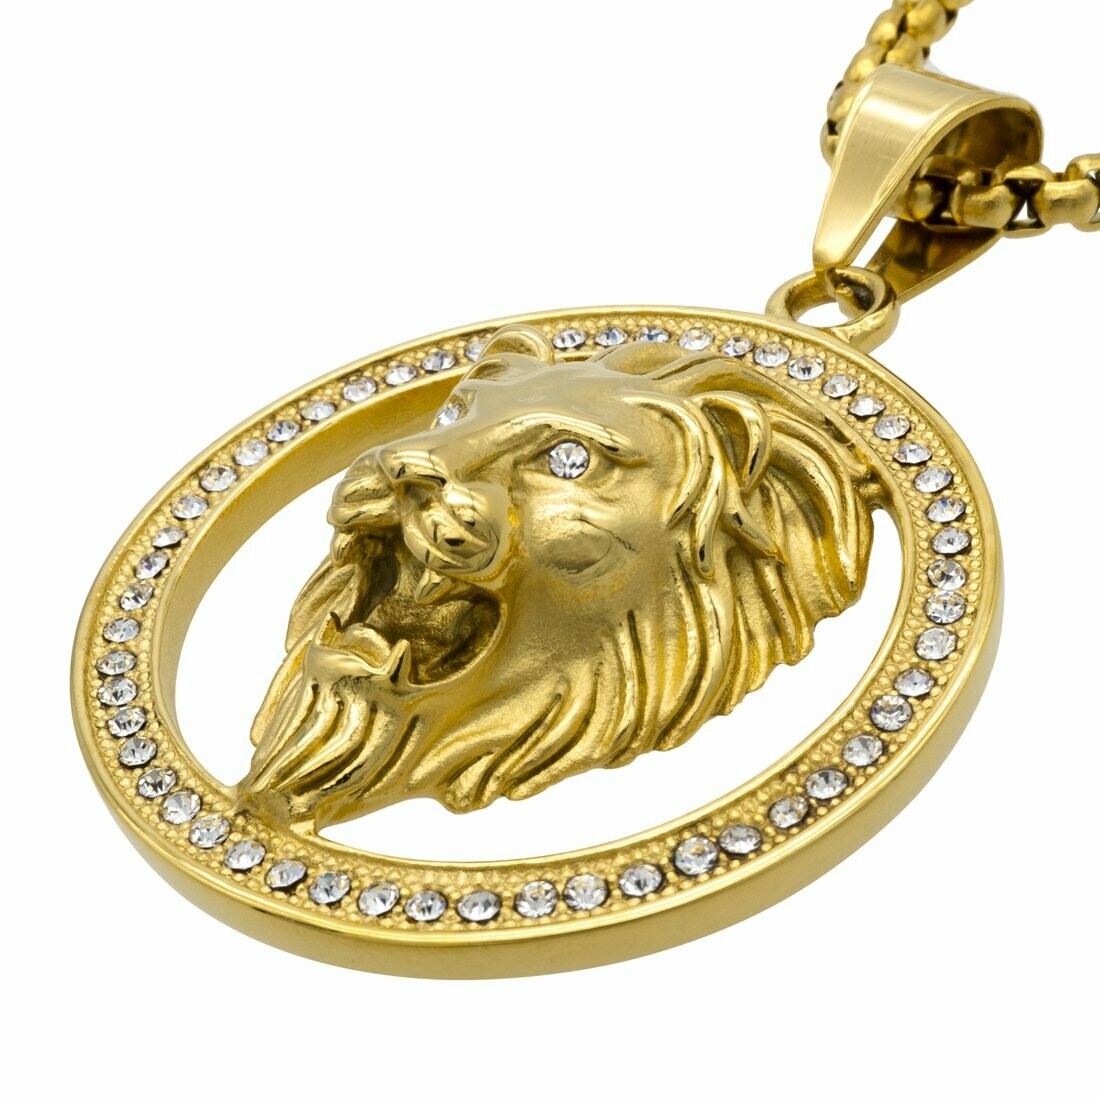 Halskette Anhänger Löwenkopf vergoldet mit Strass Edelstahl